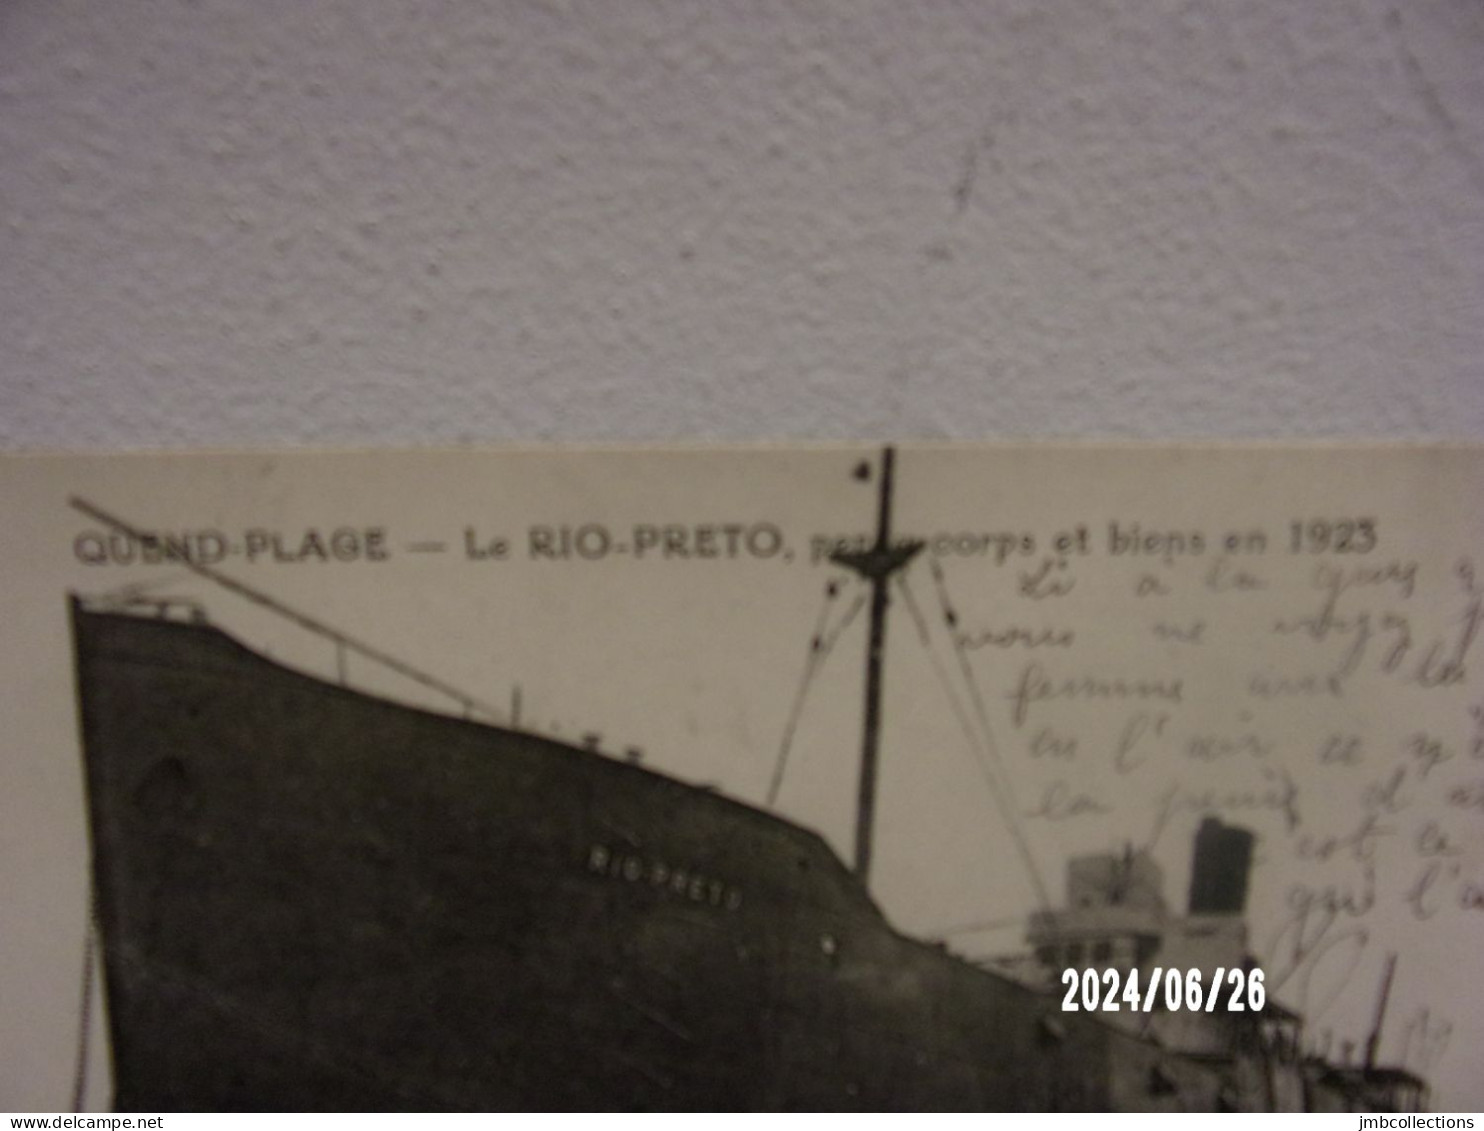 QUEND PLAGE (Somme) LE RIO PRETO PERDU CORPS ET BIENS EN 1923 - Quend